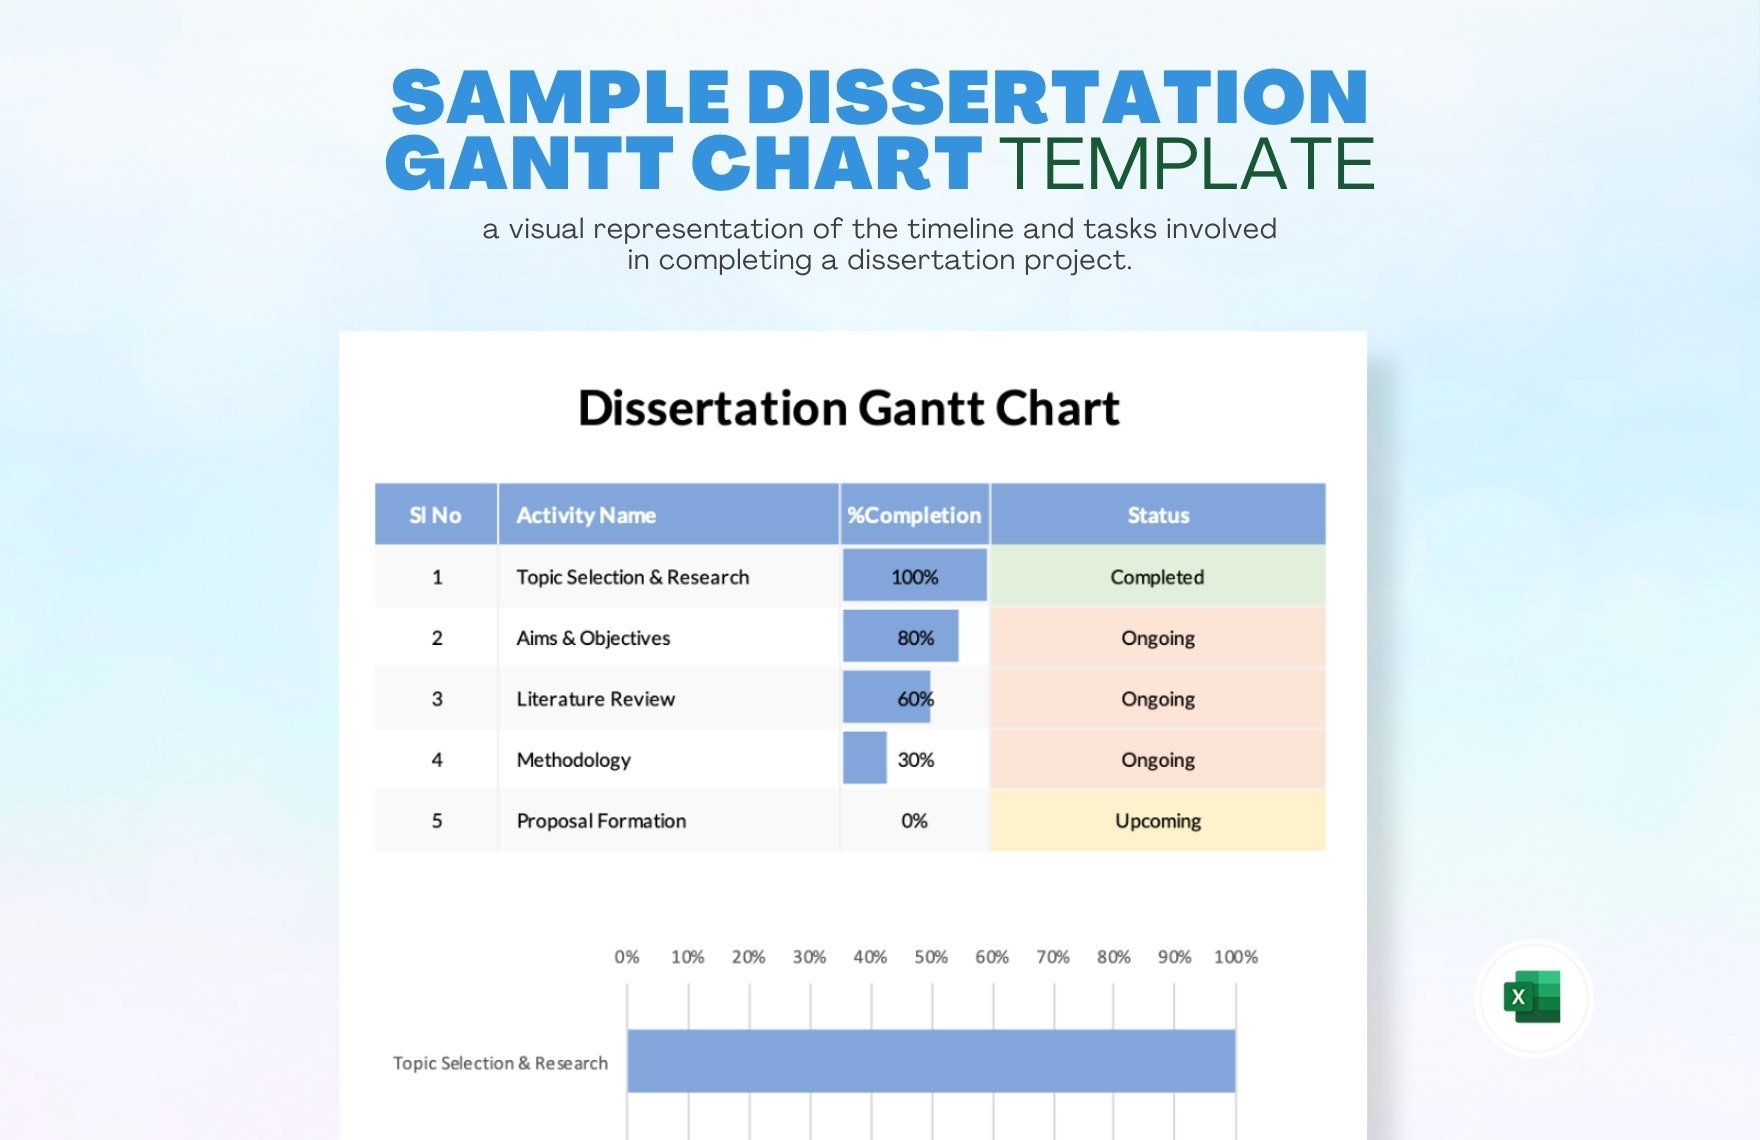 Sample Dissertation Gantt Chart Template in Excel